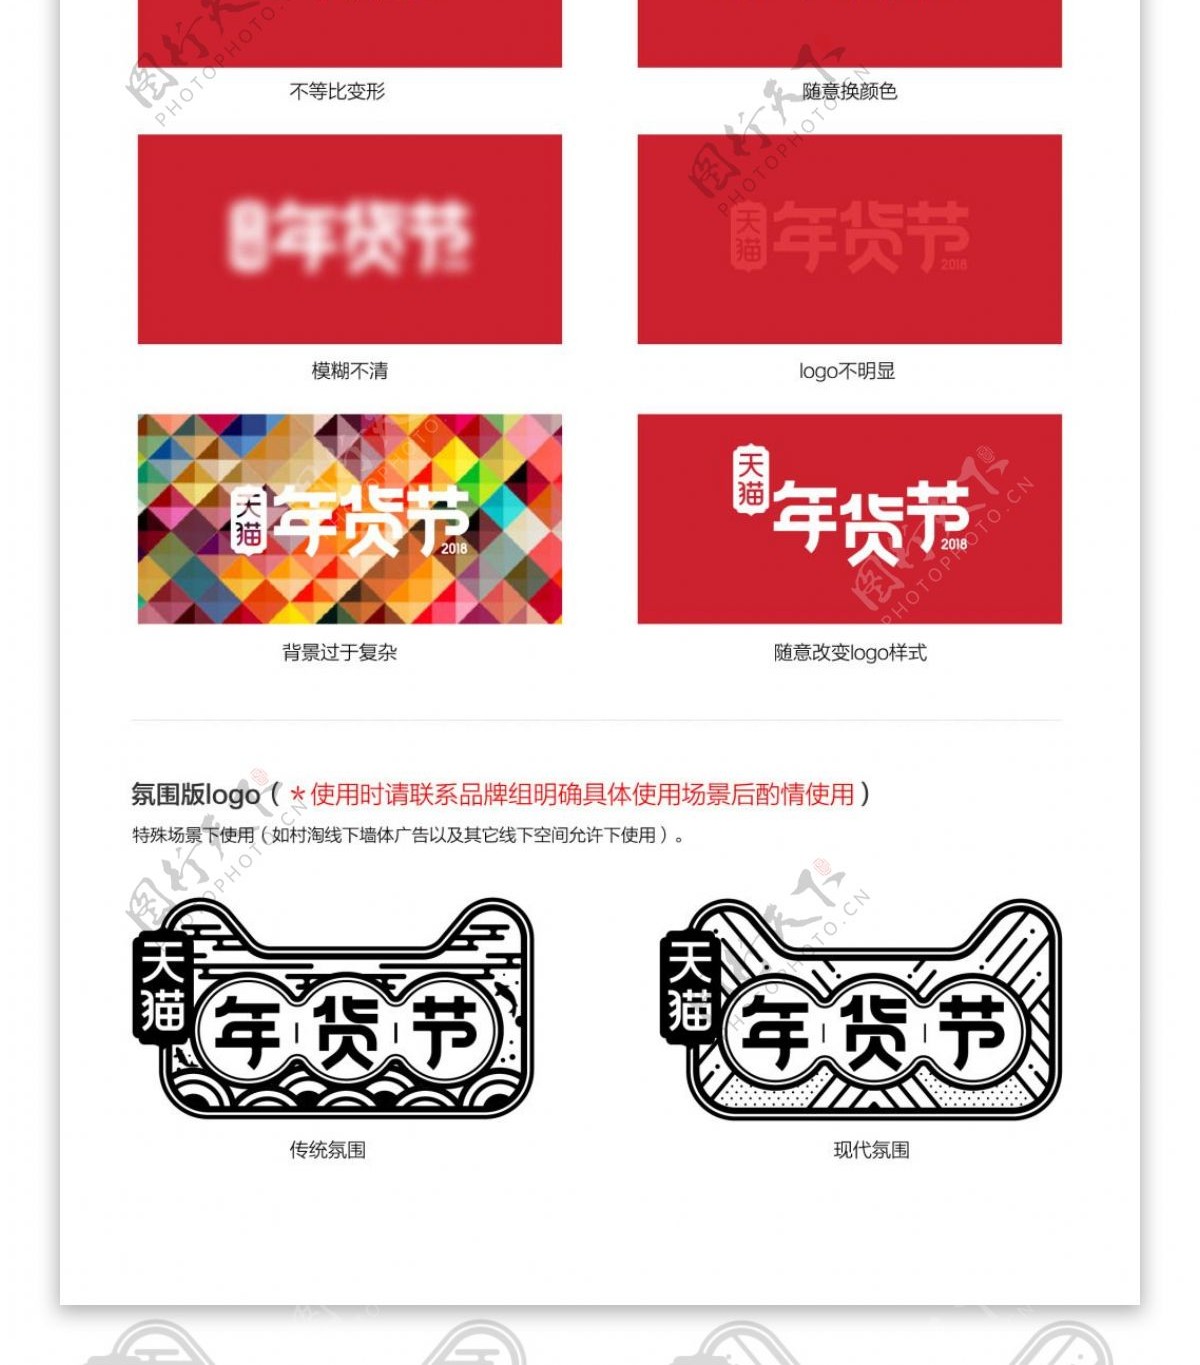 2018天猫年货节logo素材PSD模板